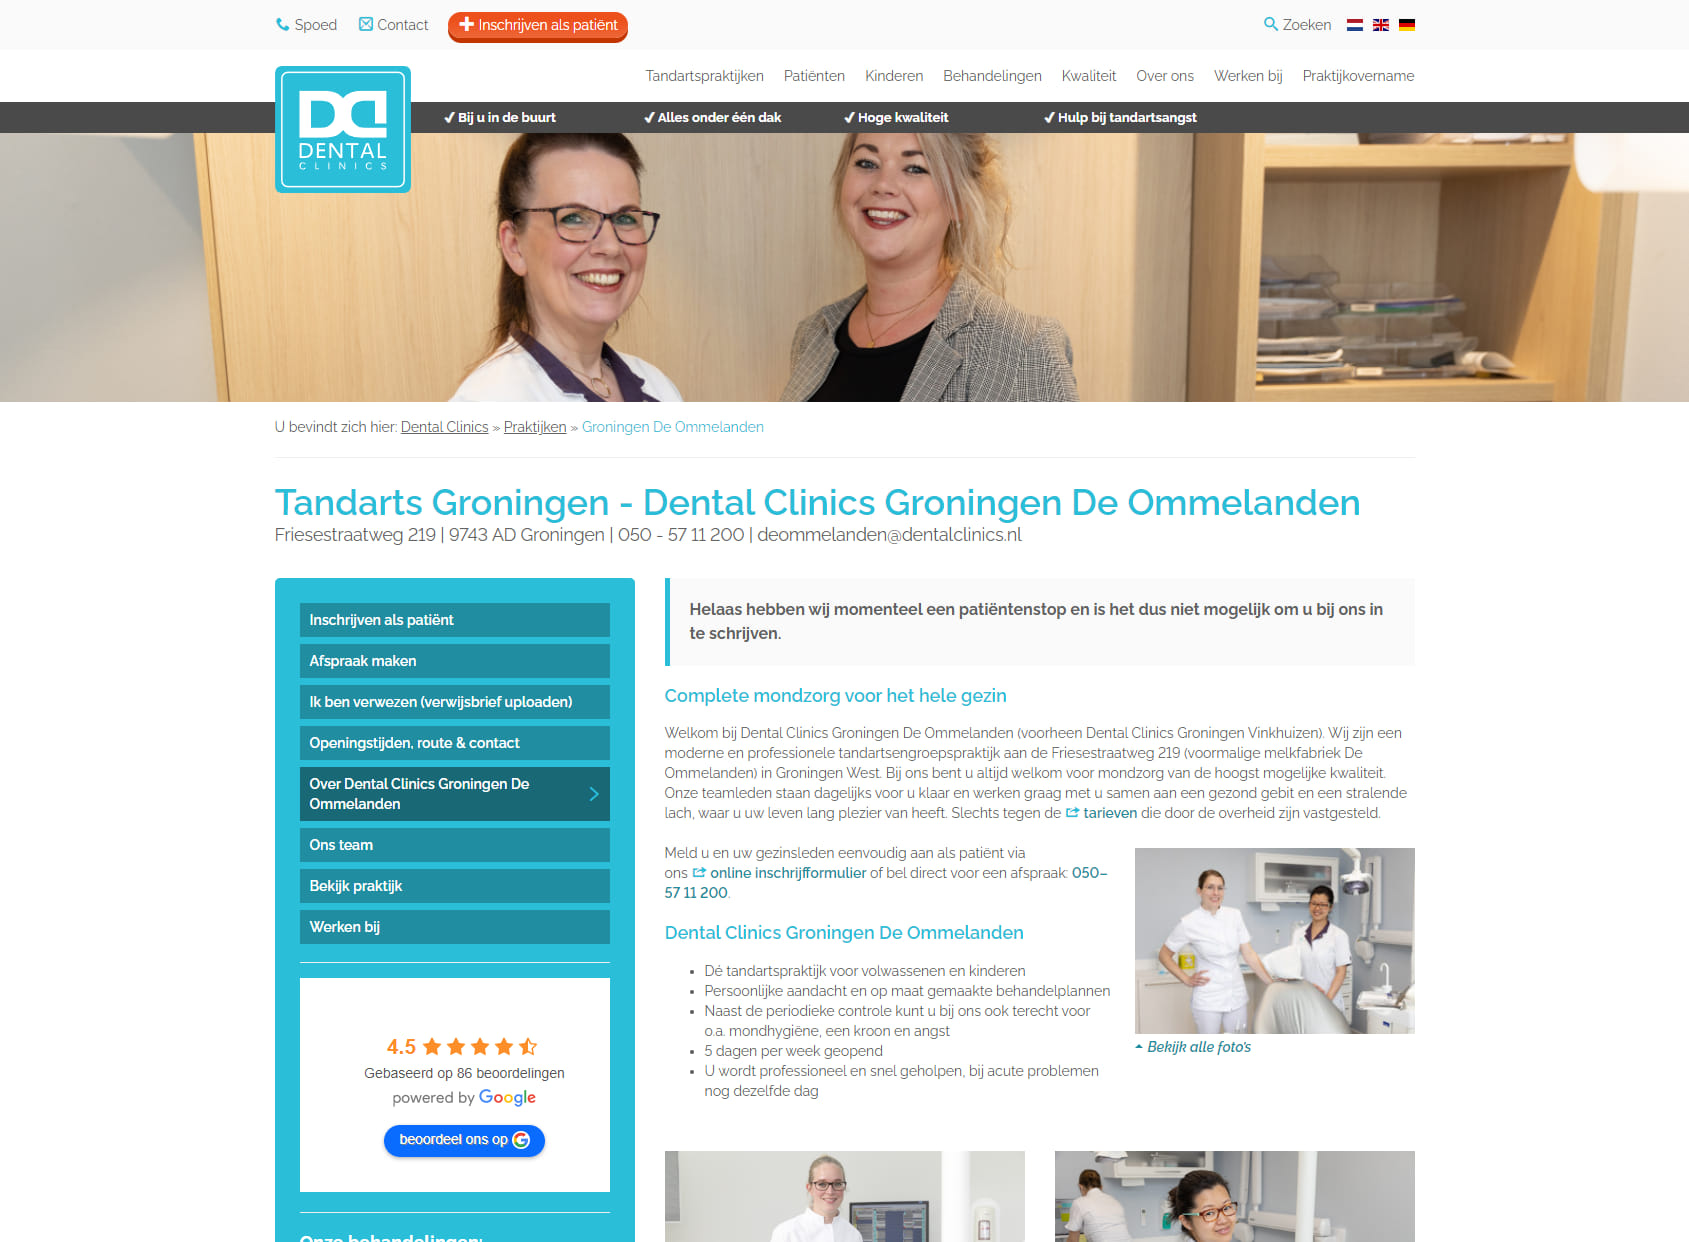 Dental Clinics Groningen De Ommelanden